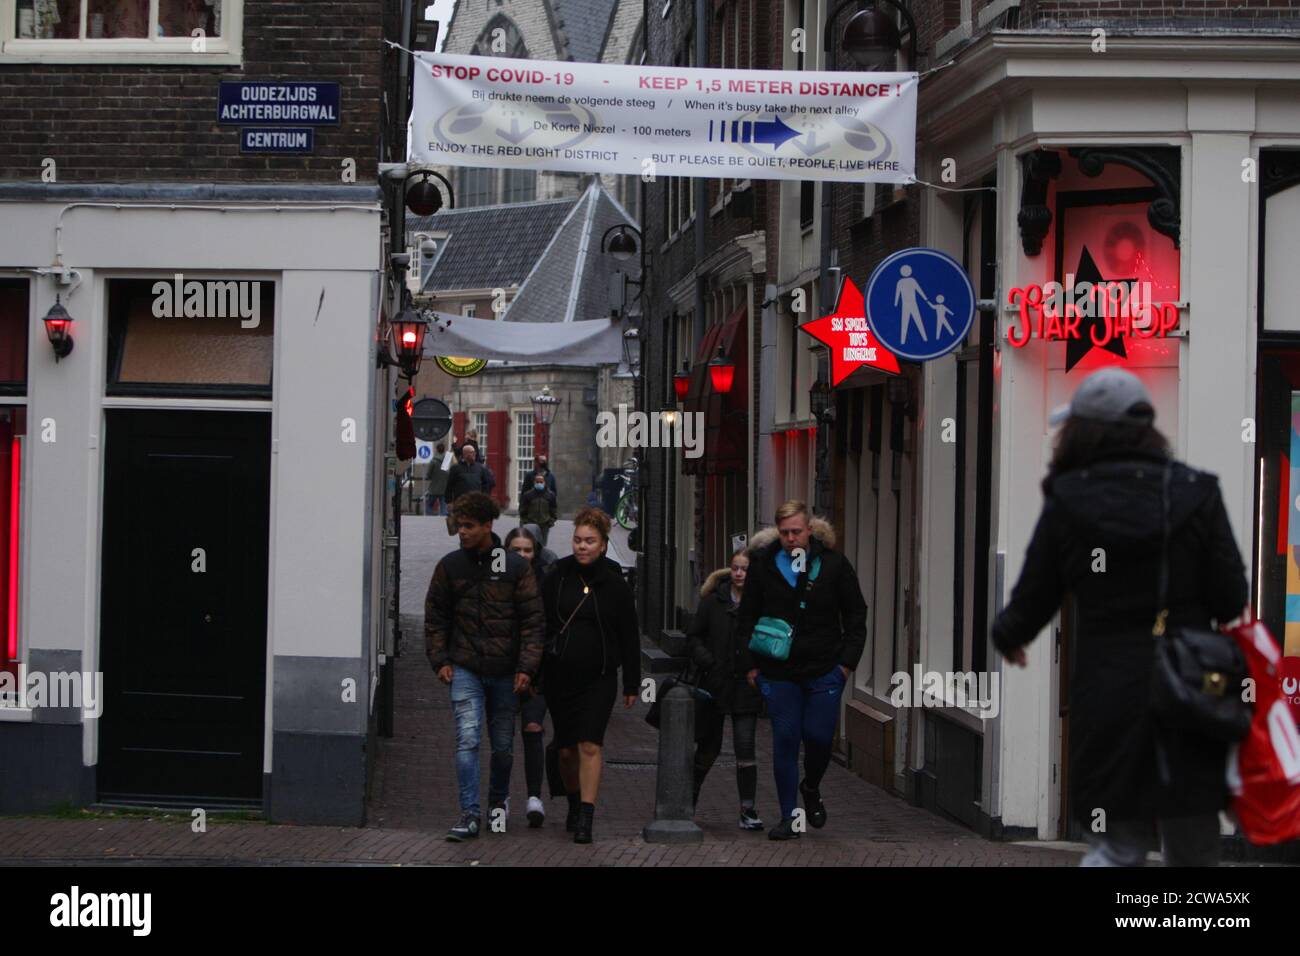 Les touristes et les habitants de la région sont vus dans le quartier  rouge, dans le contexte de la pandémie du coronavirus, le 28 septembre 2020  à Amsterdam, aux pays-Bas. Le Premier